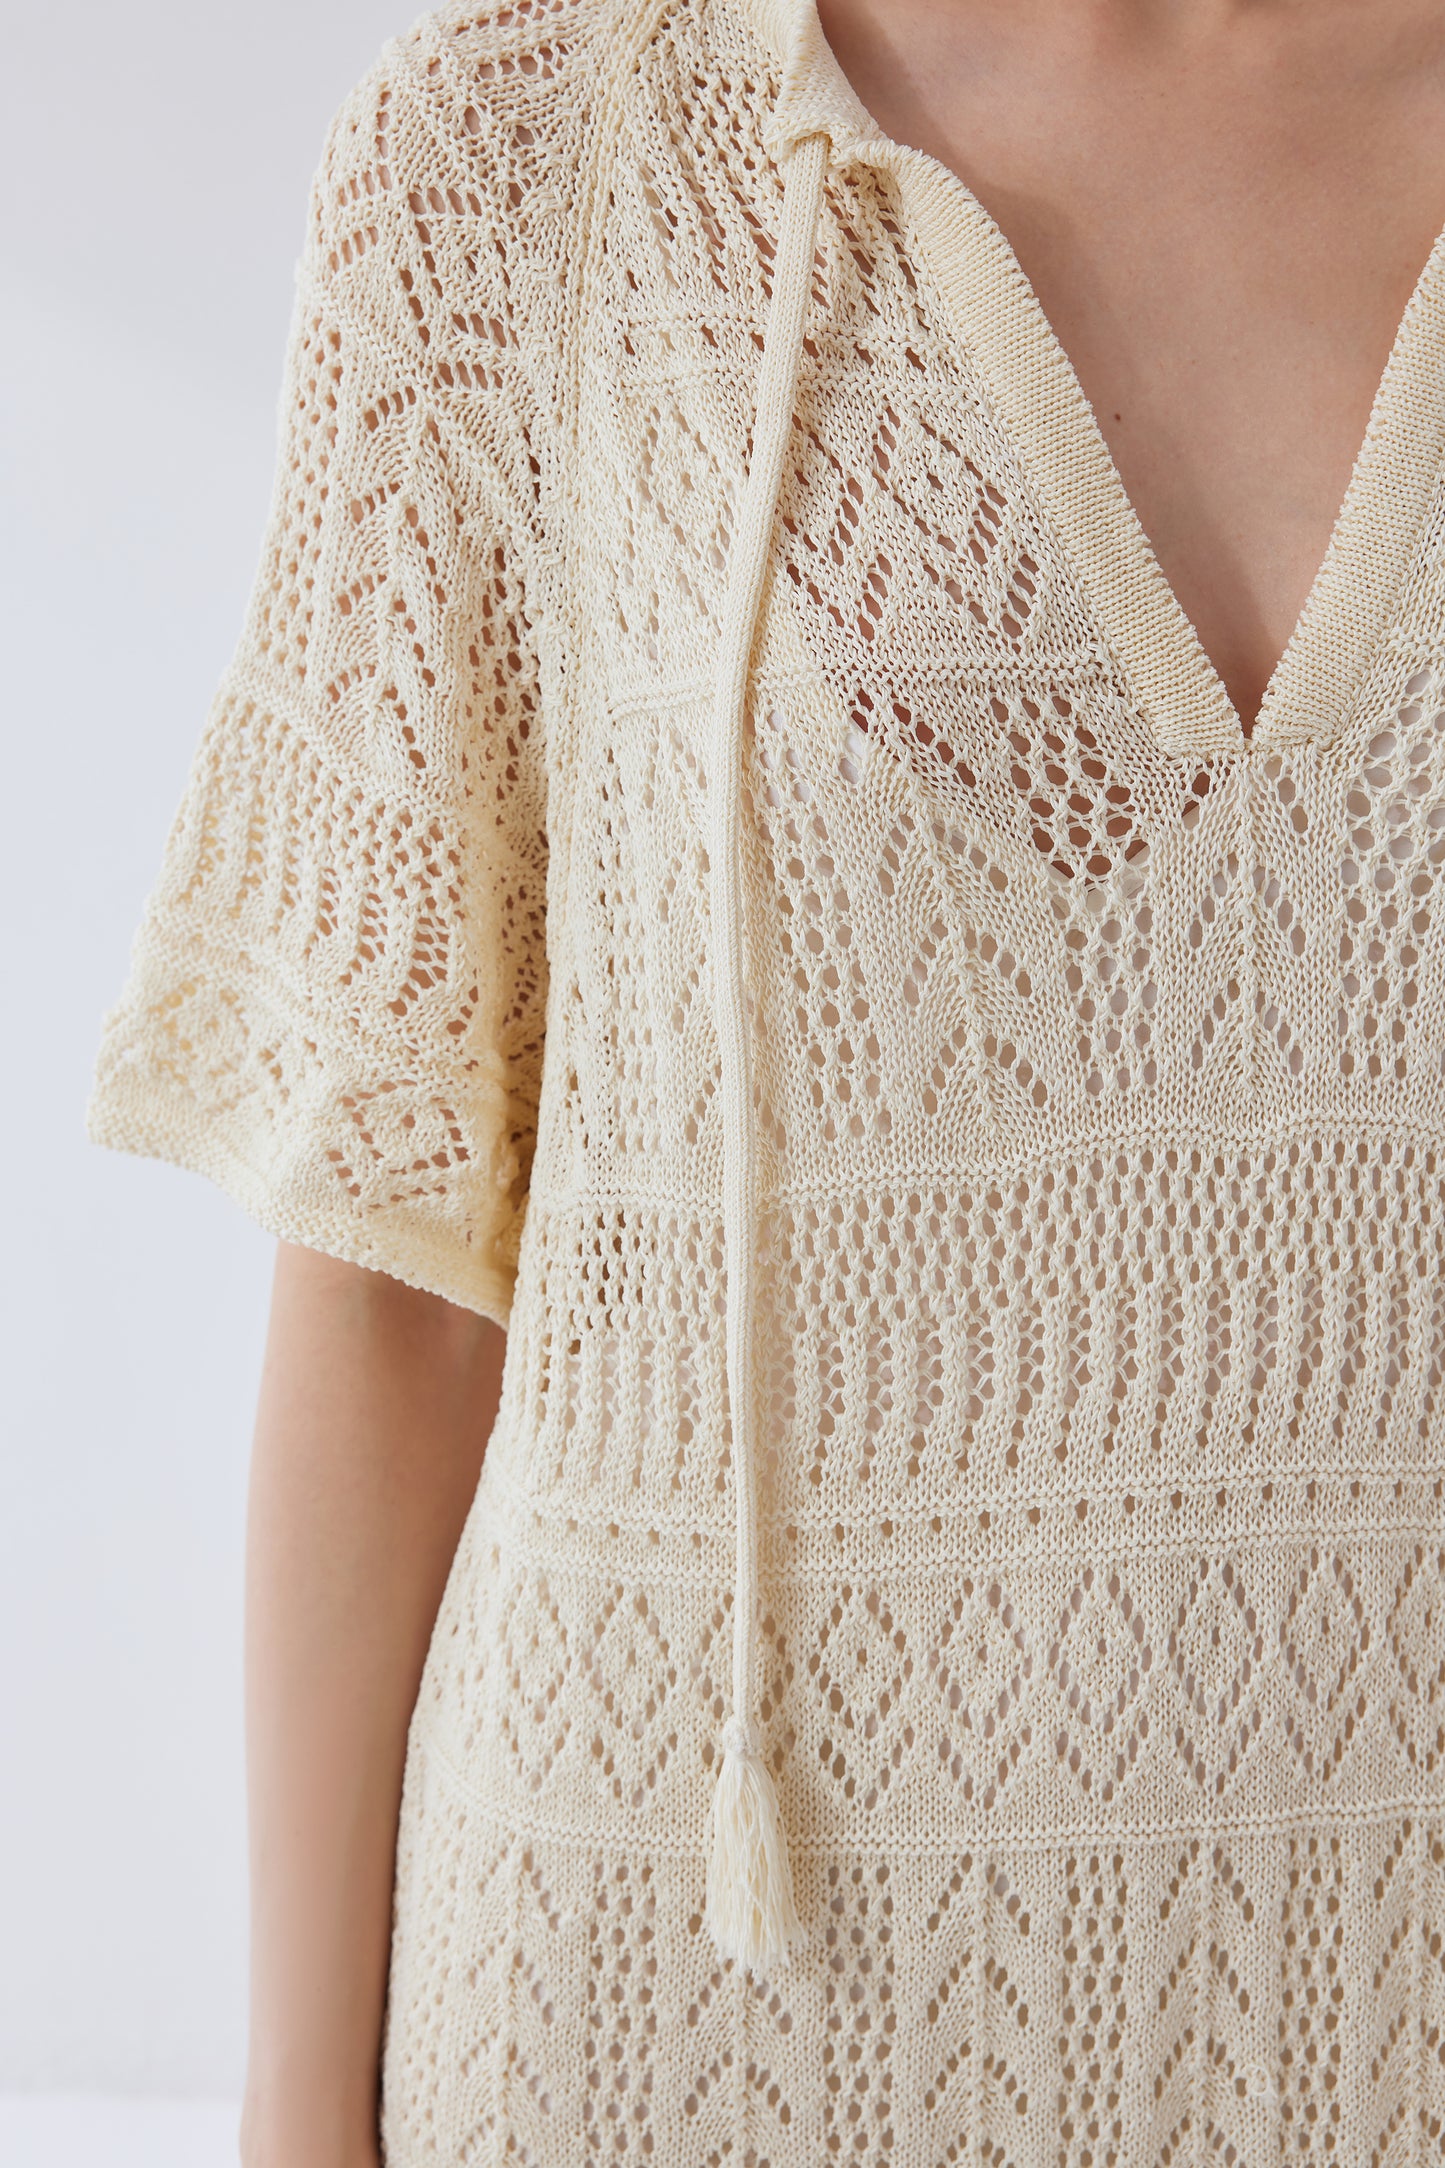 Gabriela Handcrafted Crochet Dress in Light Yarn Knit